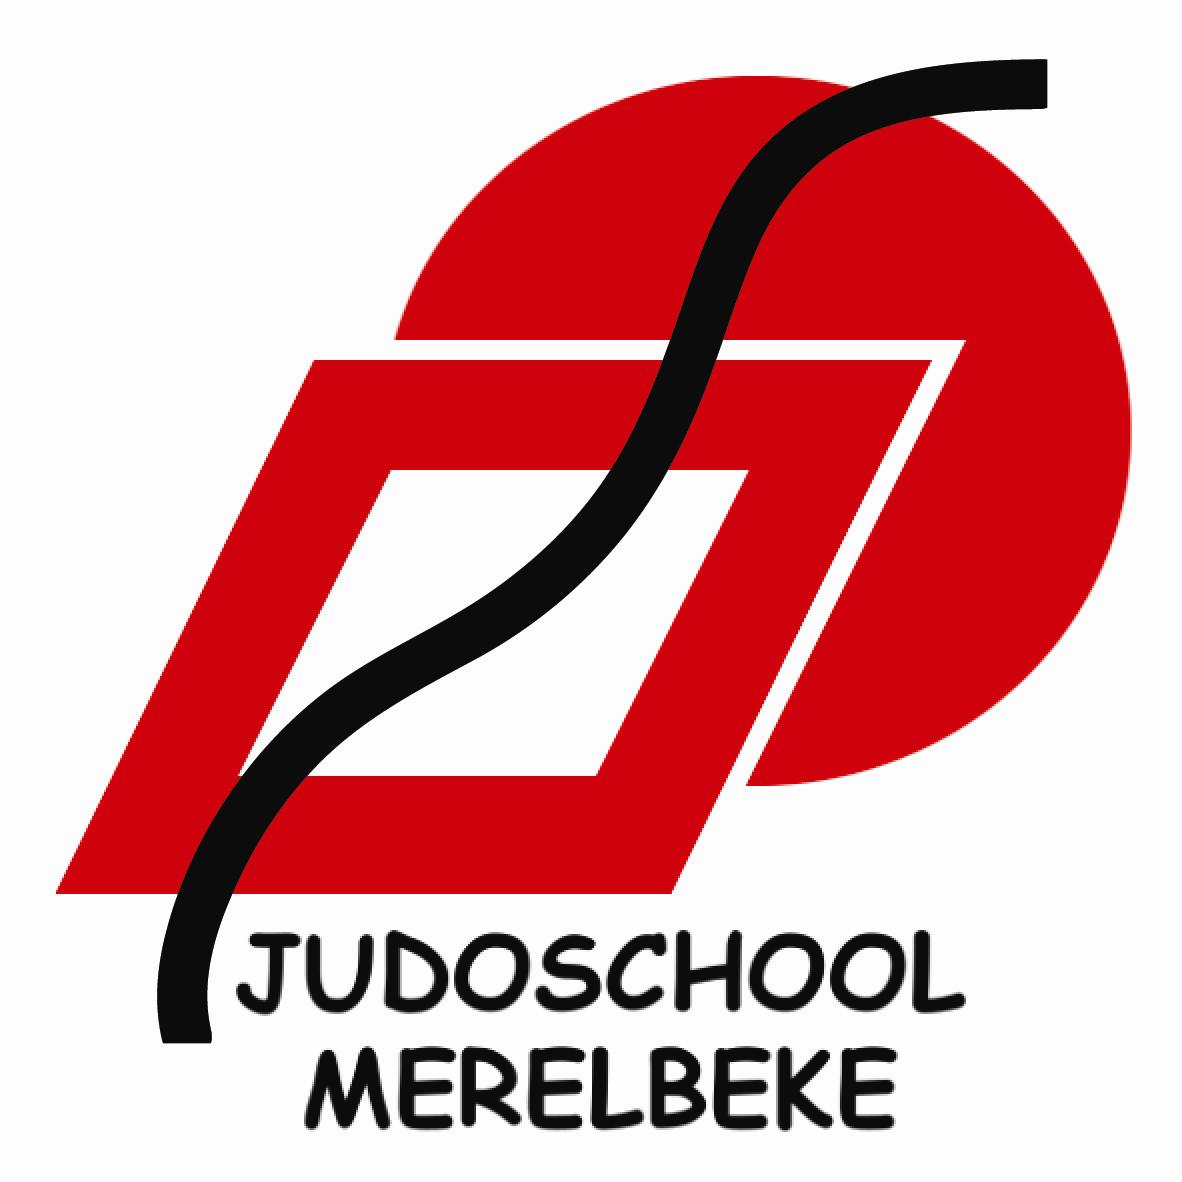 Judoschool Merelbeke